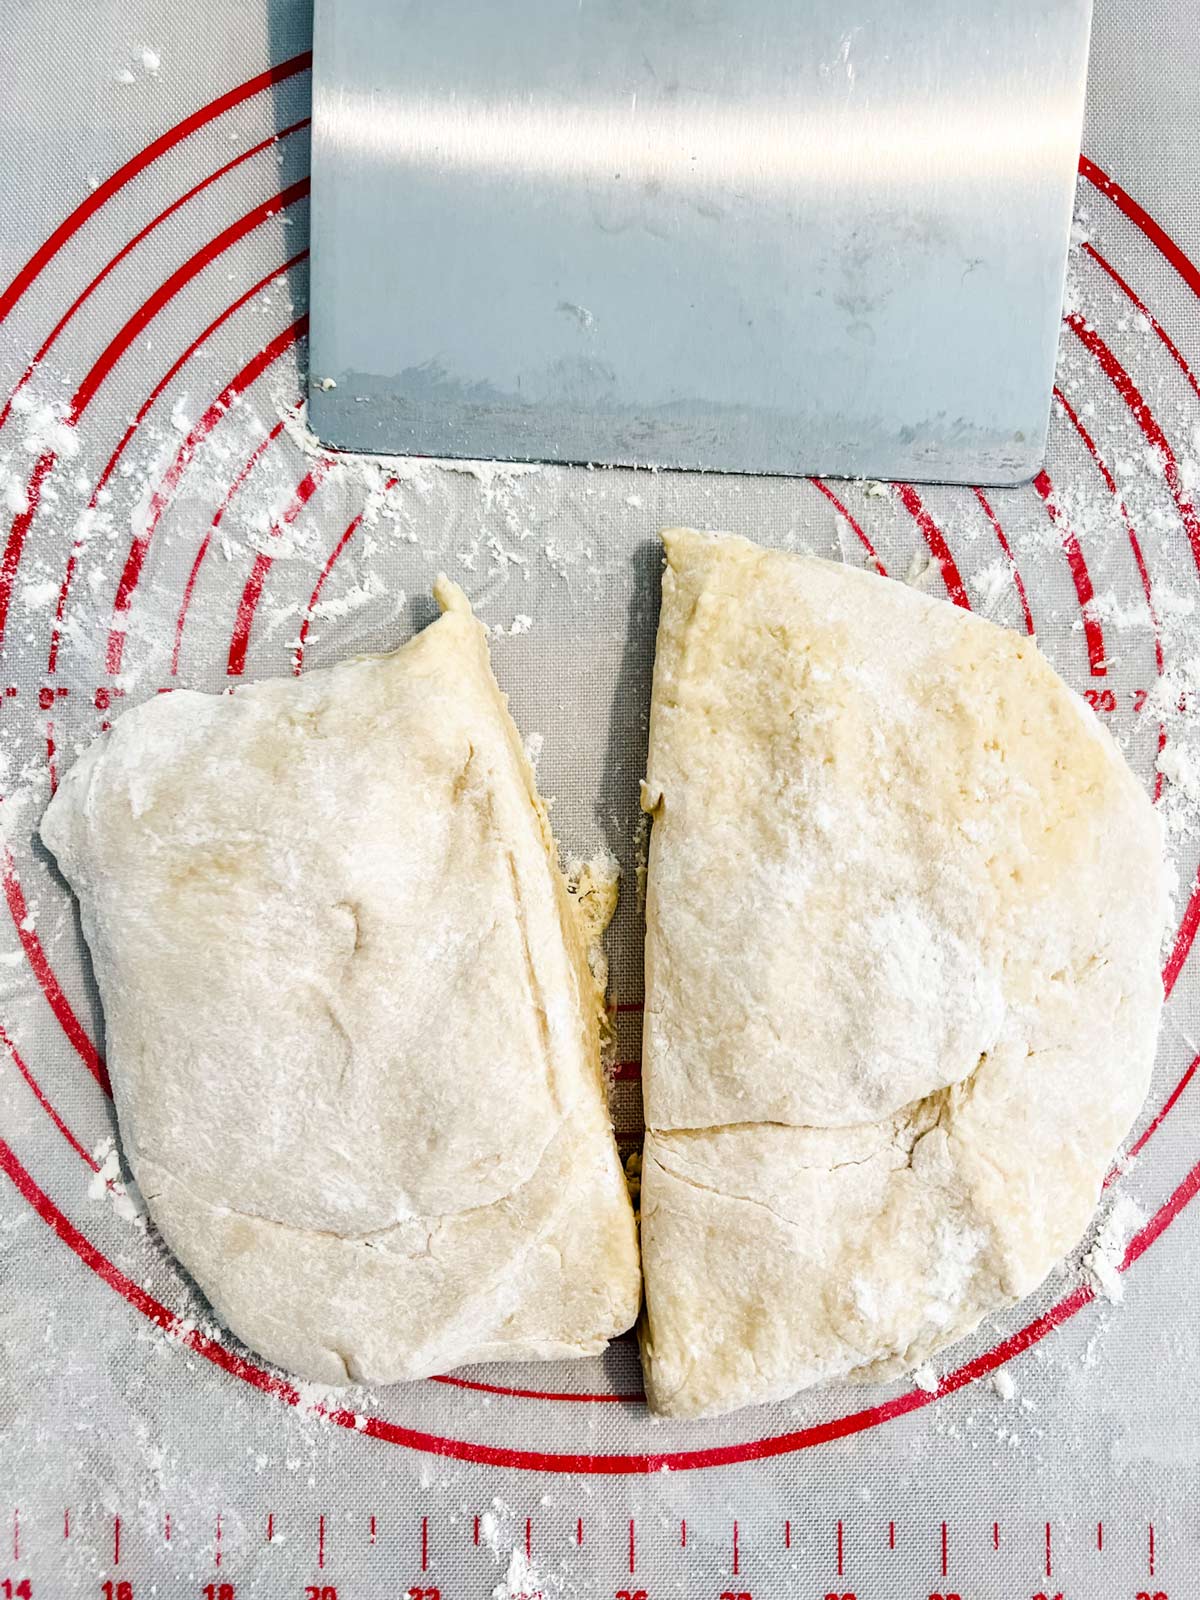 Brioche dough cut into two pieces.